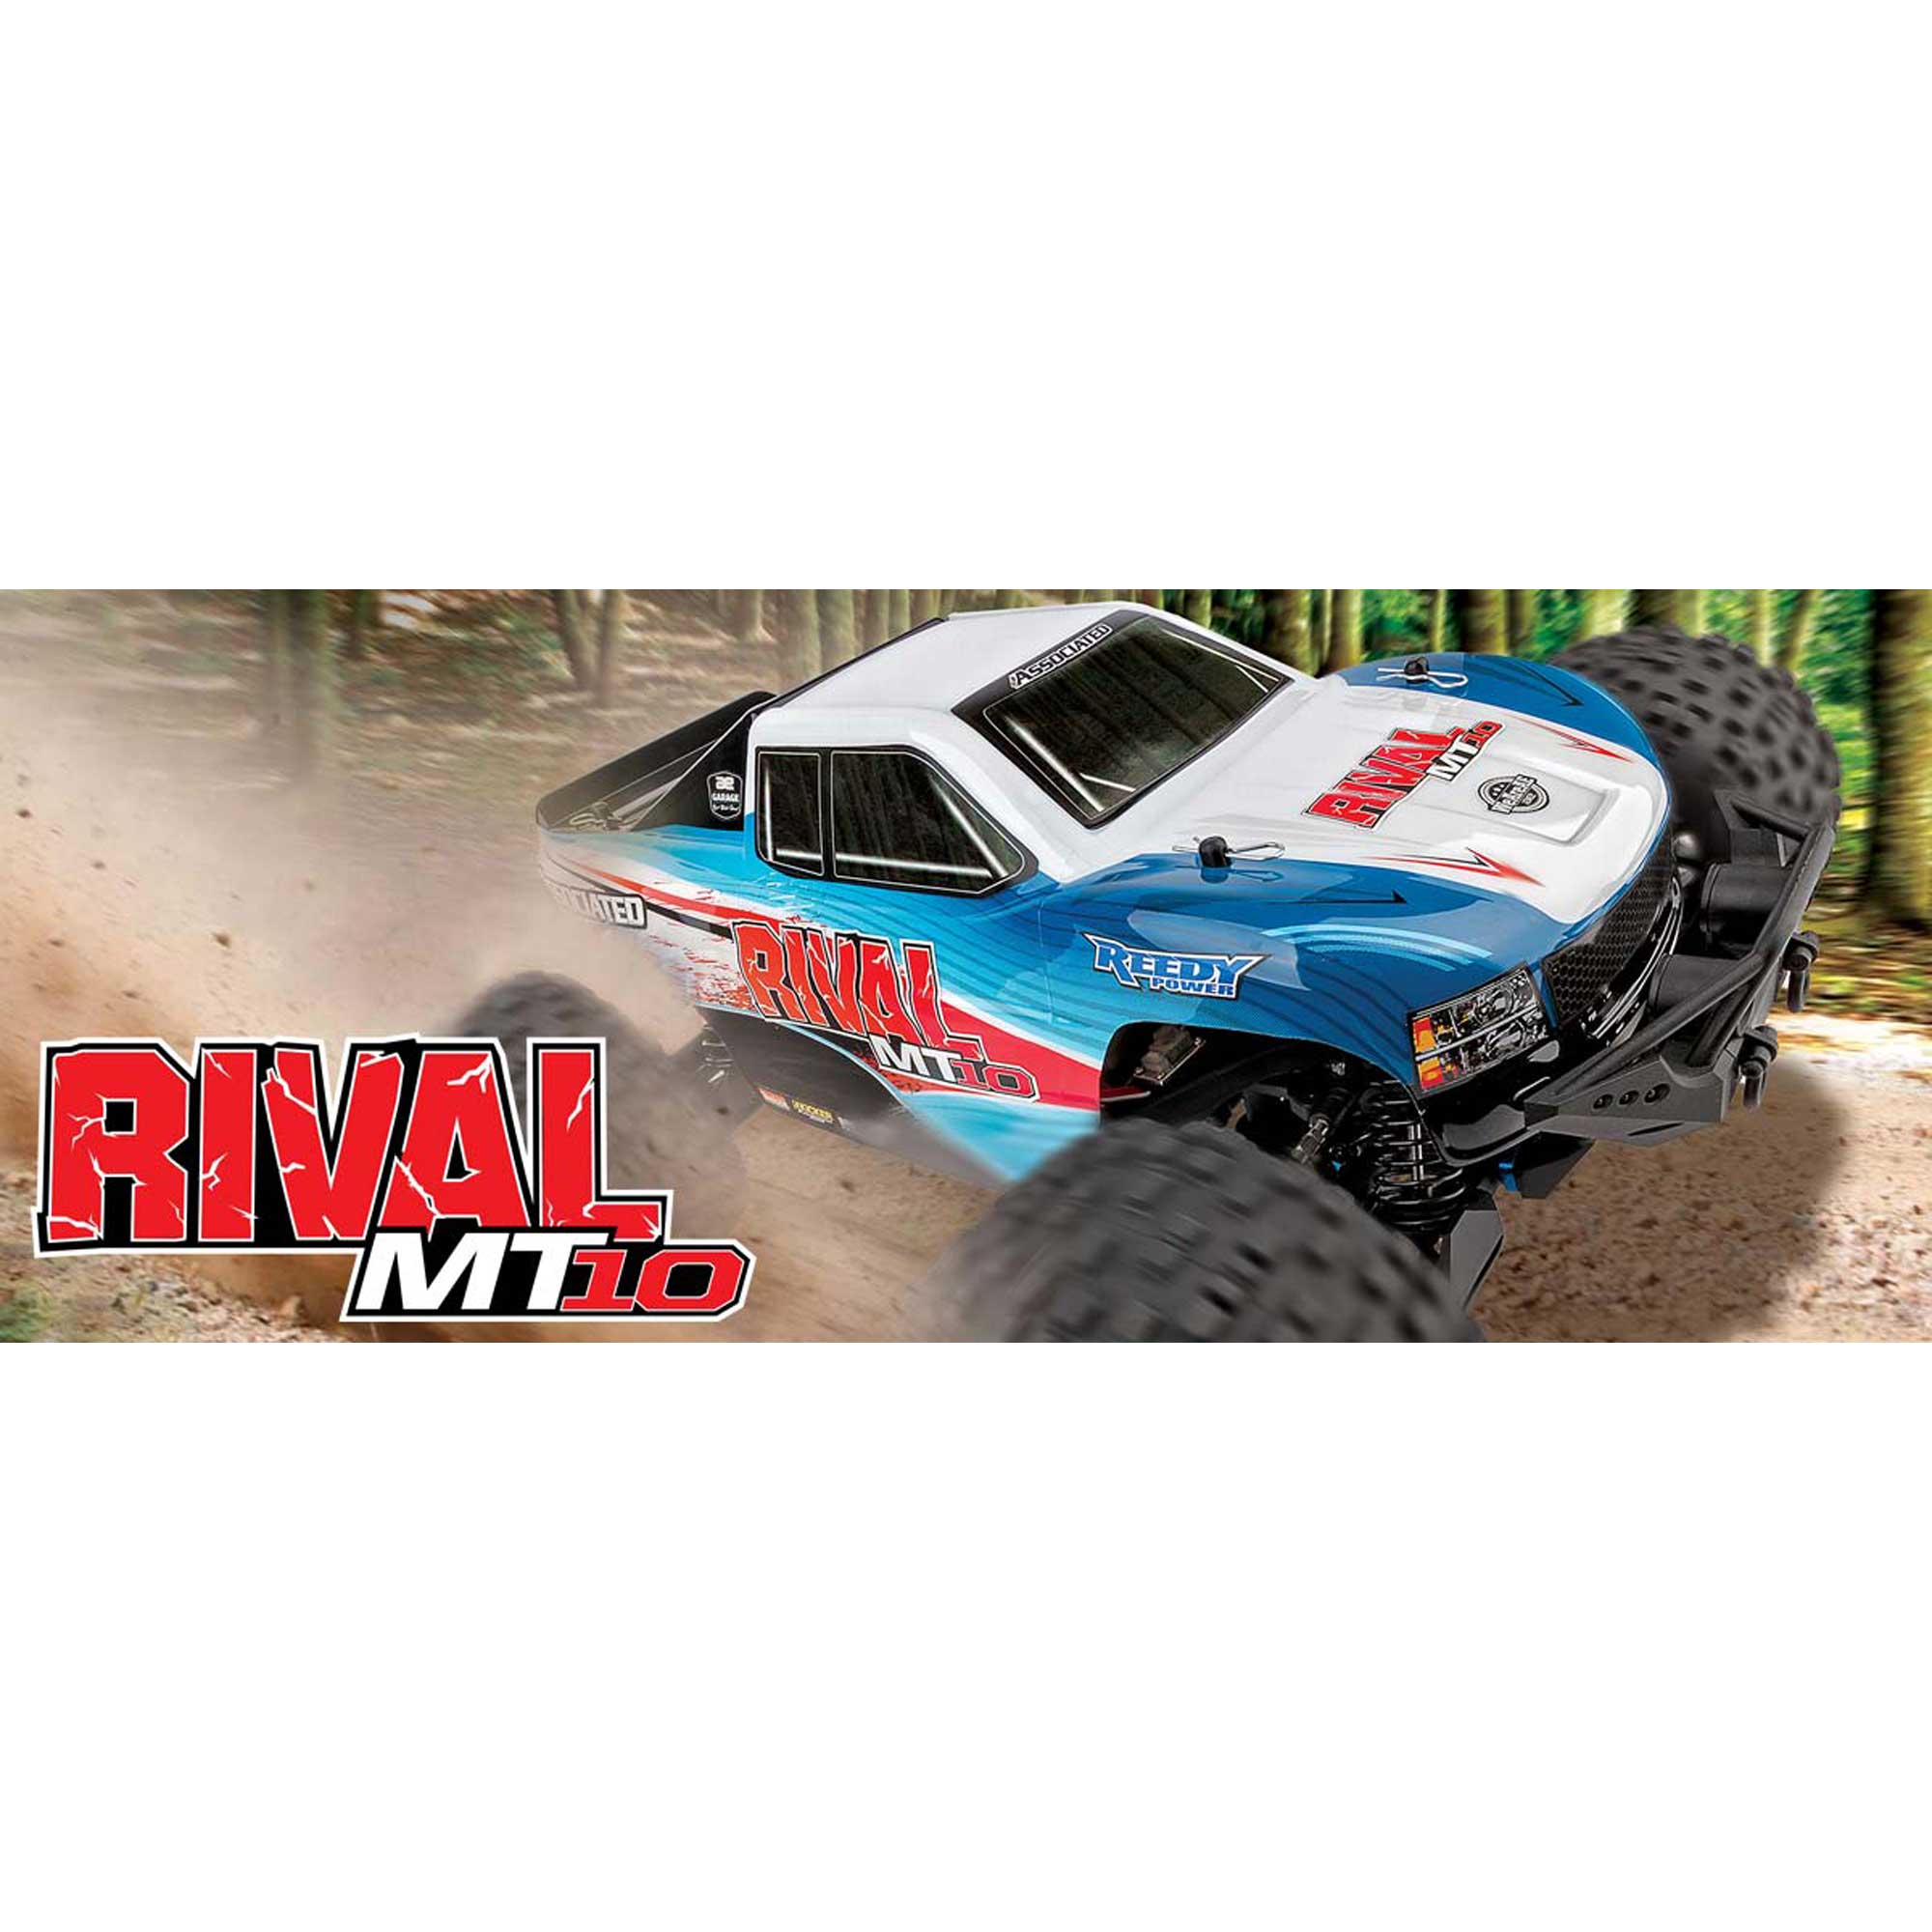 1/10 Rival MT10 4X4 Monster Truck Brushless RTR